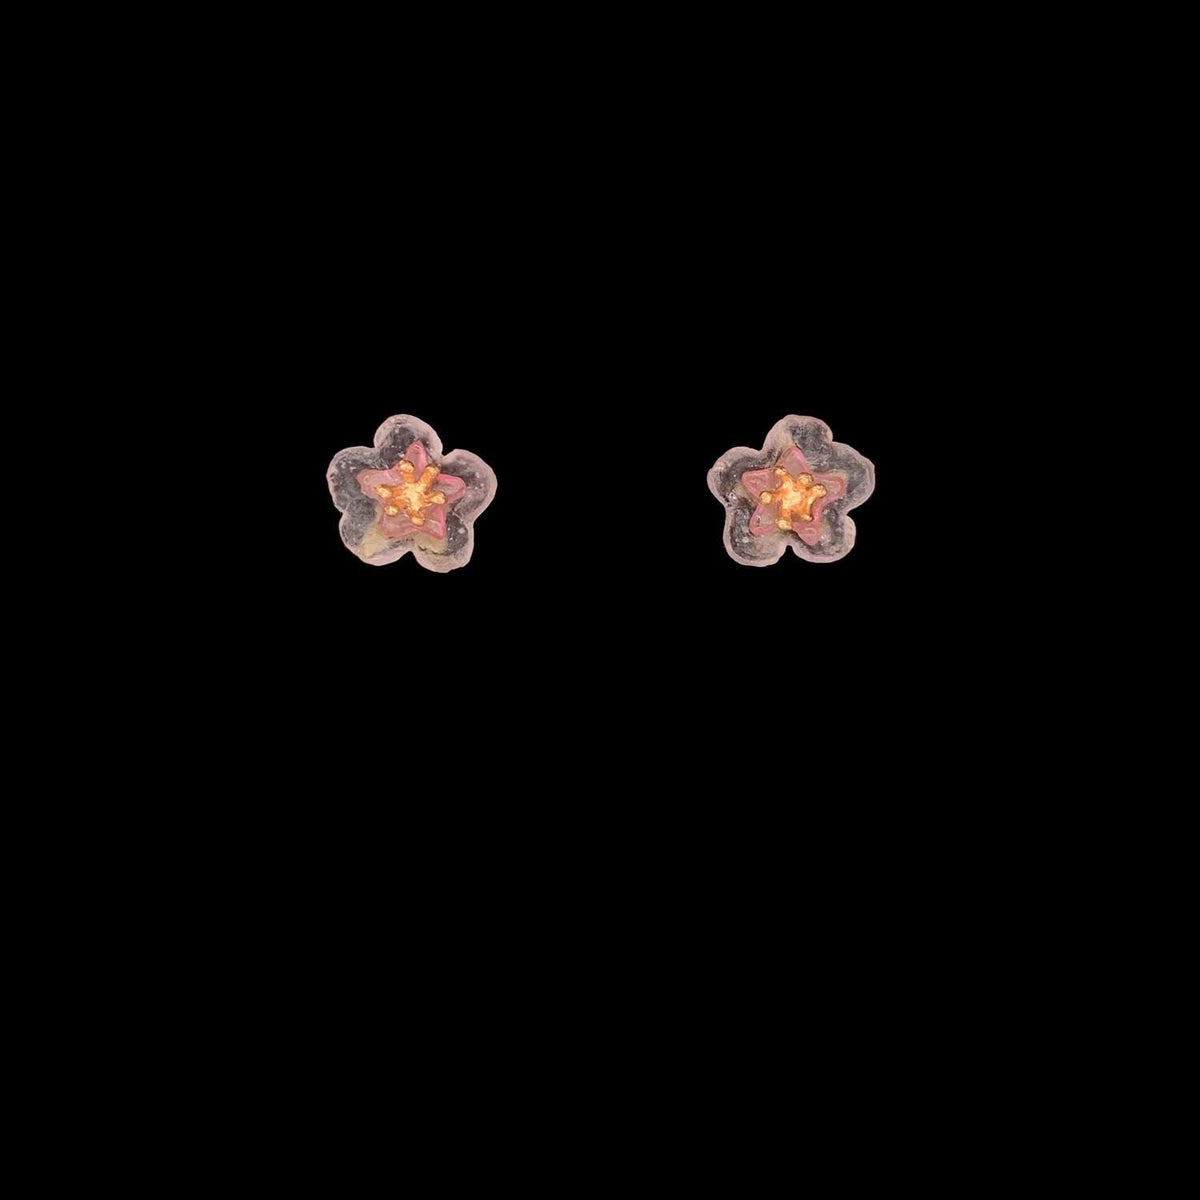 Peach Blossom Earrings - Flower Drop Wire